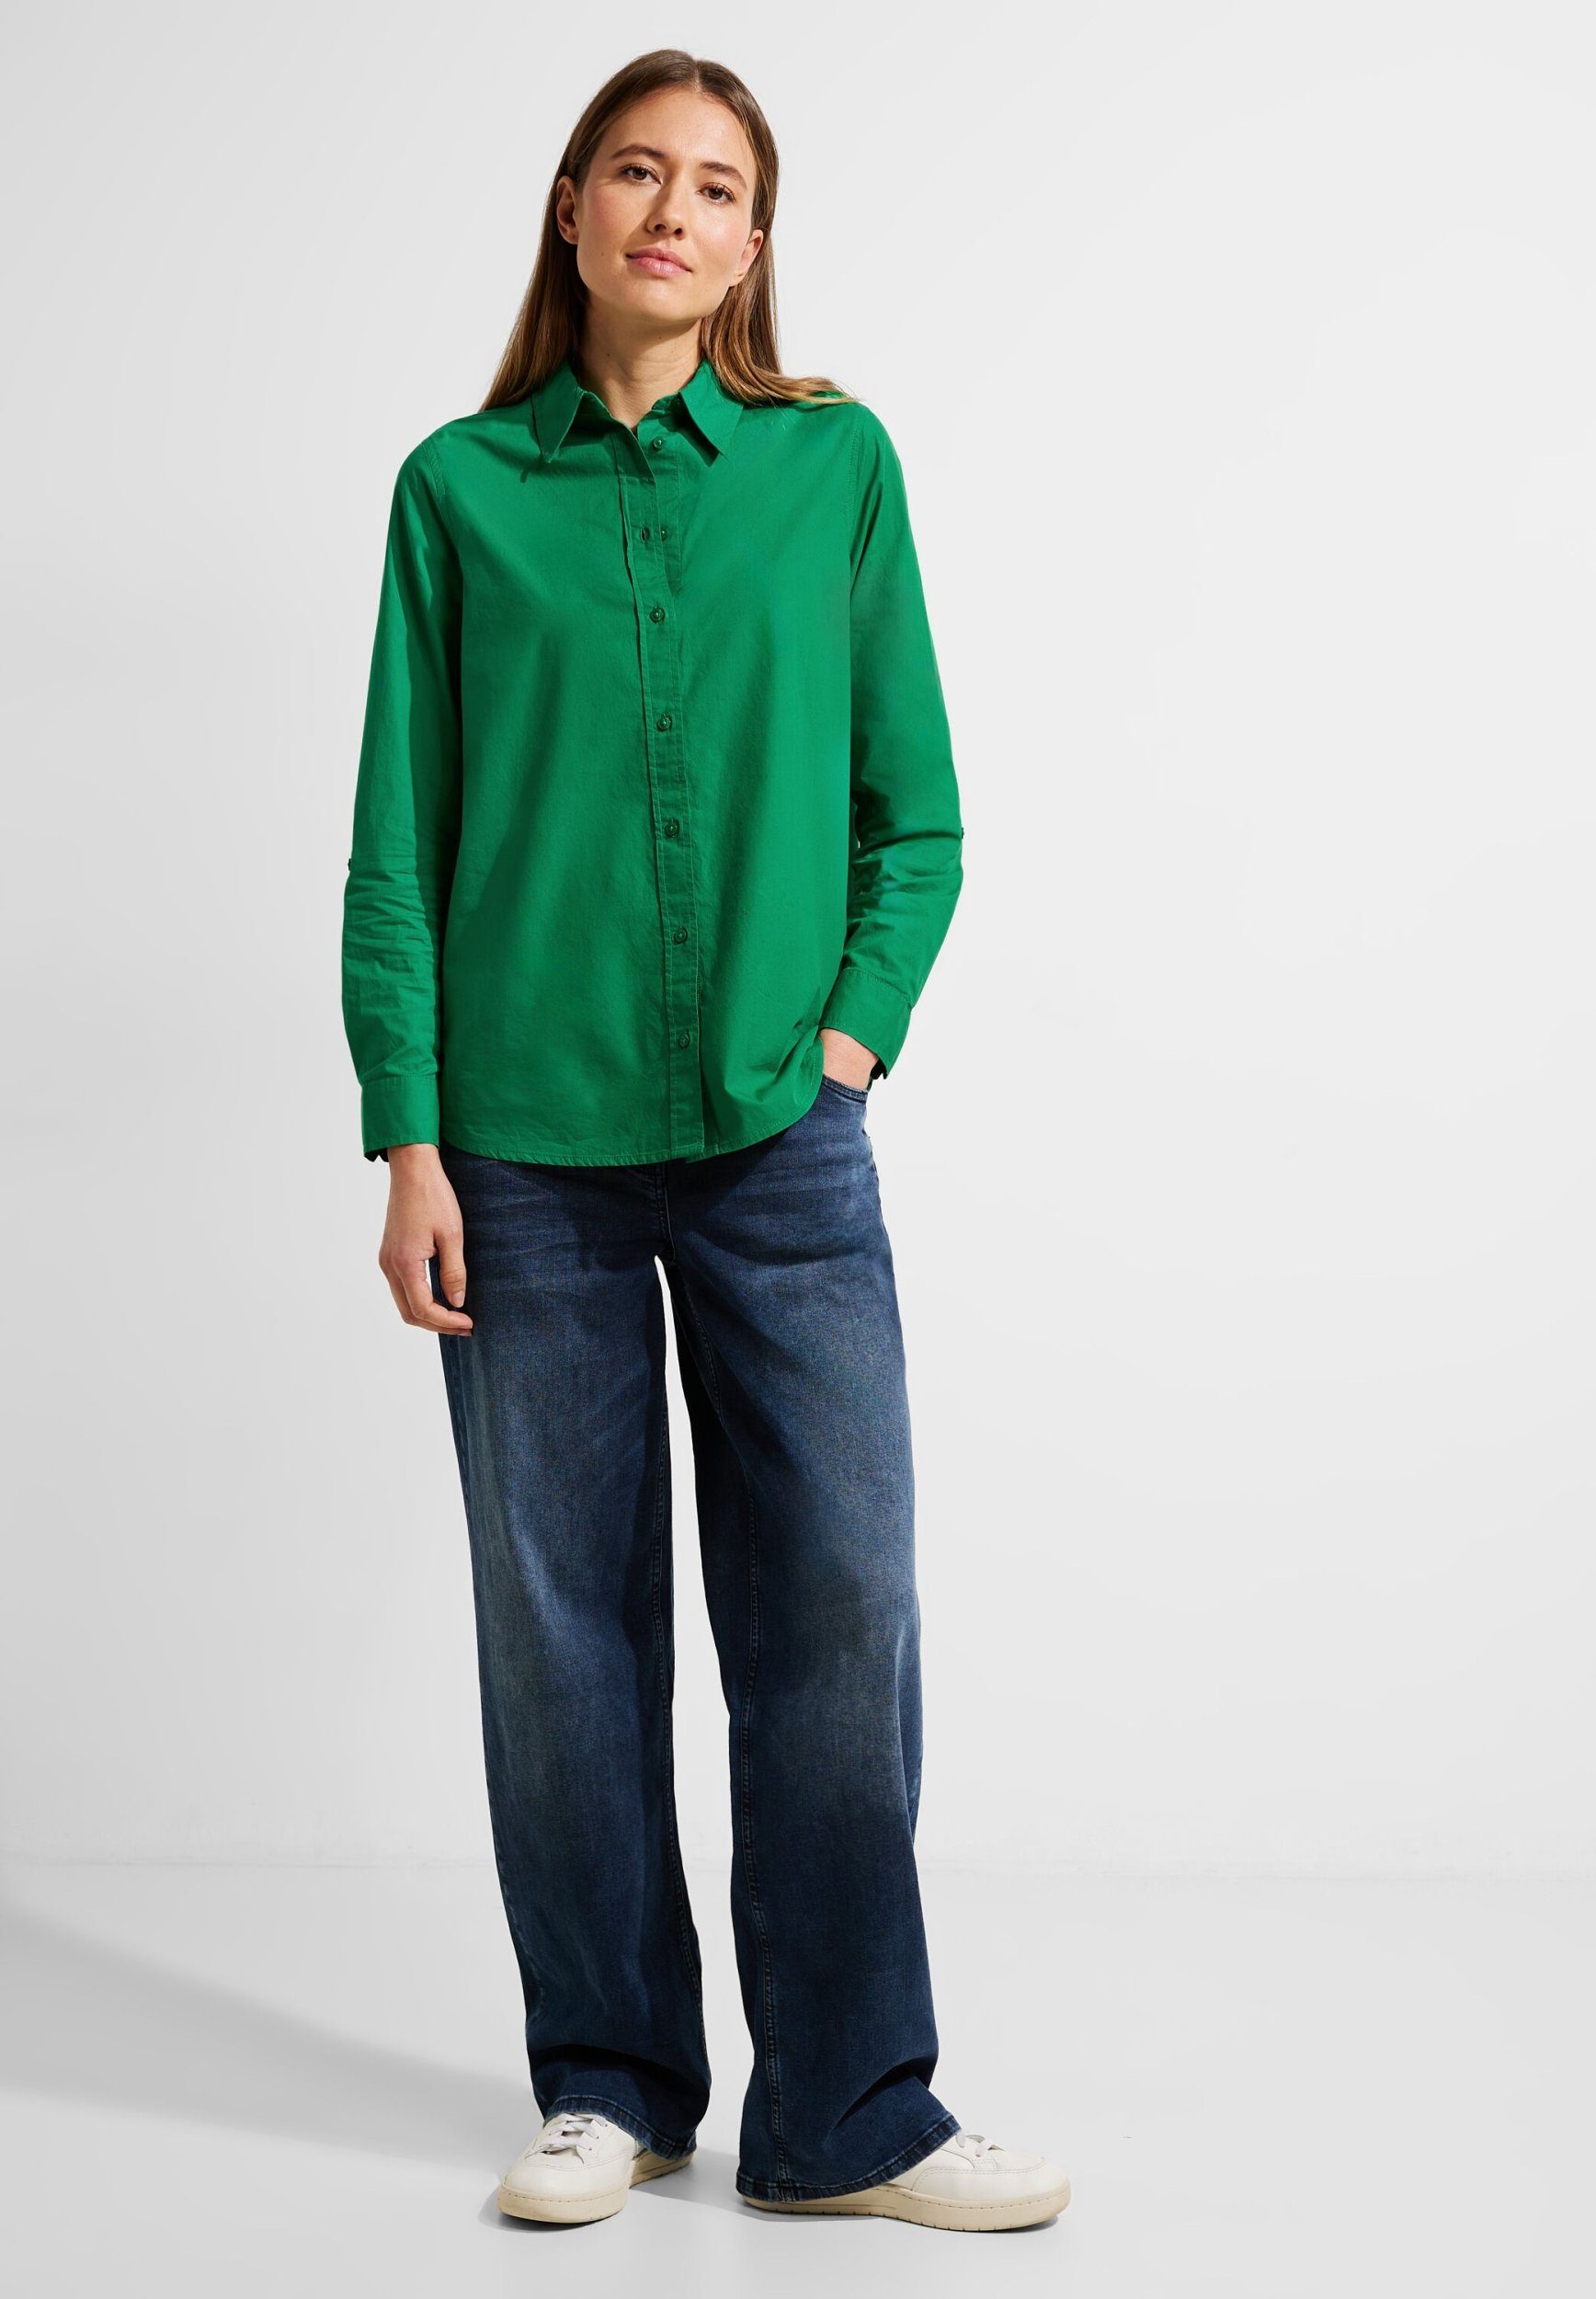 Cecil easy Lange Baumwolle Bluse Bluse Klassische aus green